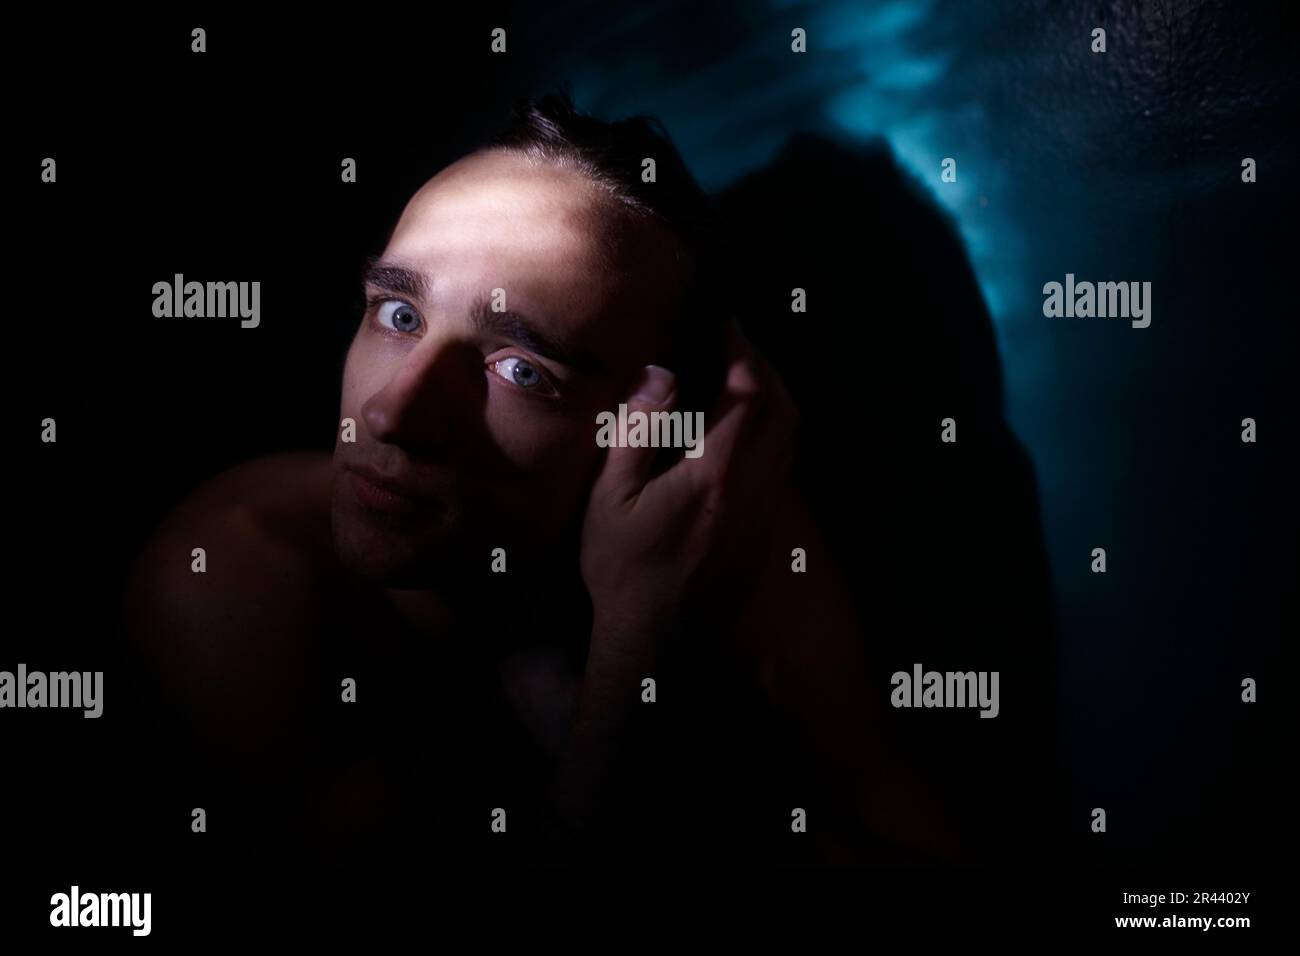 Ritratto di un uomo in una stanza buia, illuminato da un raggio di luce Foto Stock